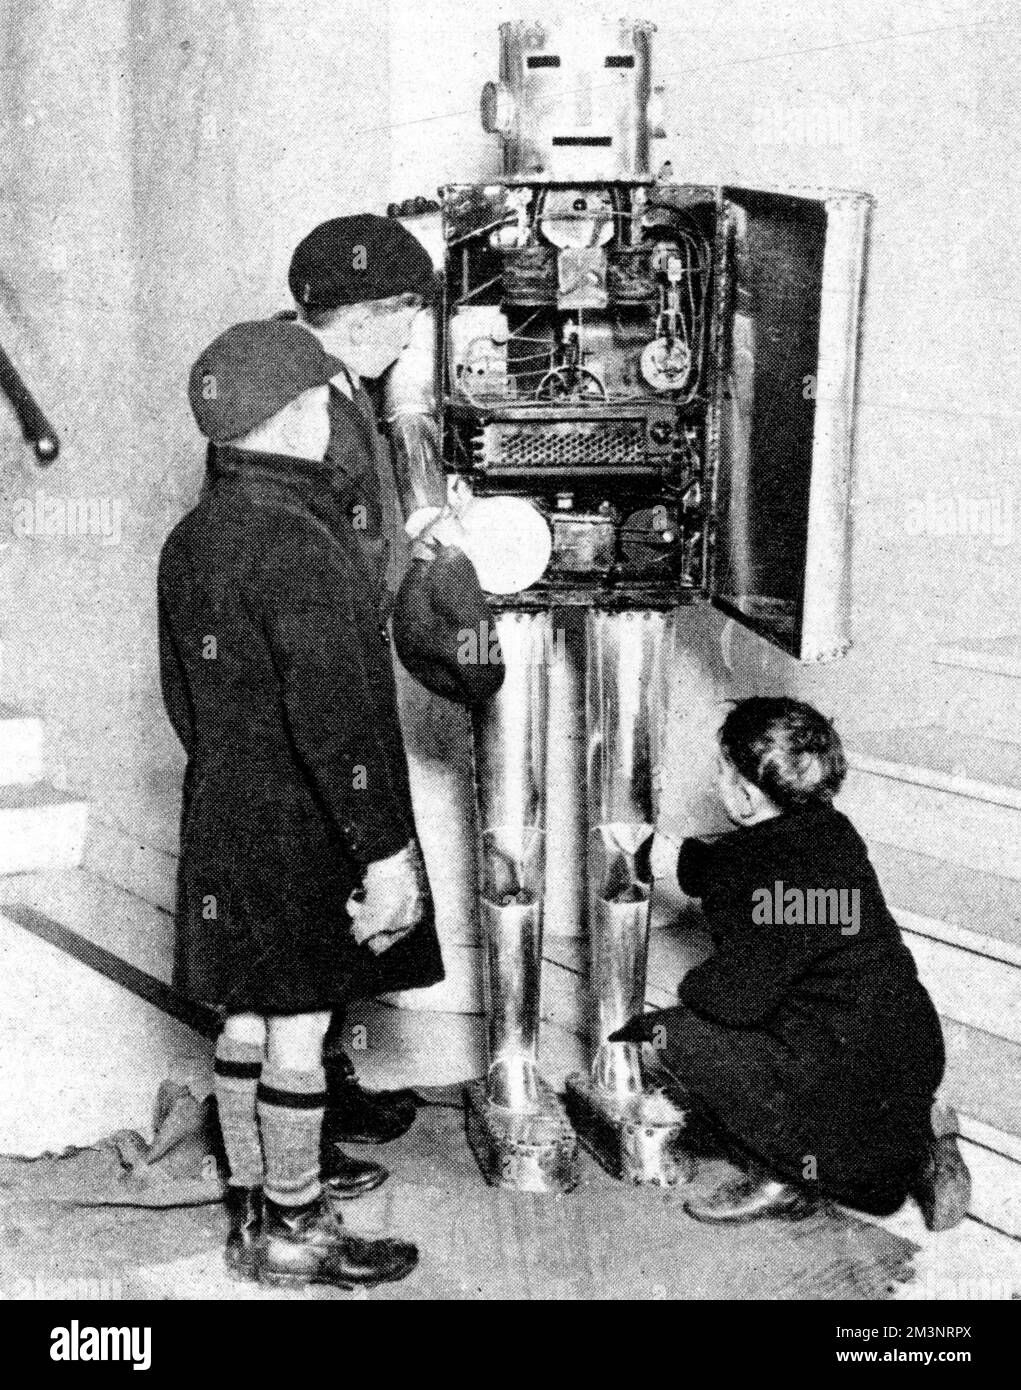 Un robot physiologique à l'exposition Schoolboys à Londres, 1929. Conçu pour montrer comment les organes du corps fonctionnent, ici trois jeunes visiteurs s'intéressent beaucoup à ses intérieurs. Date: 1929 Banque D'Images